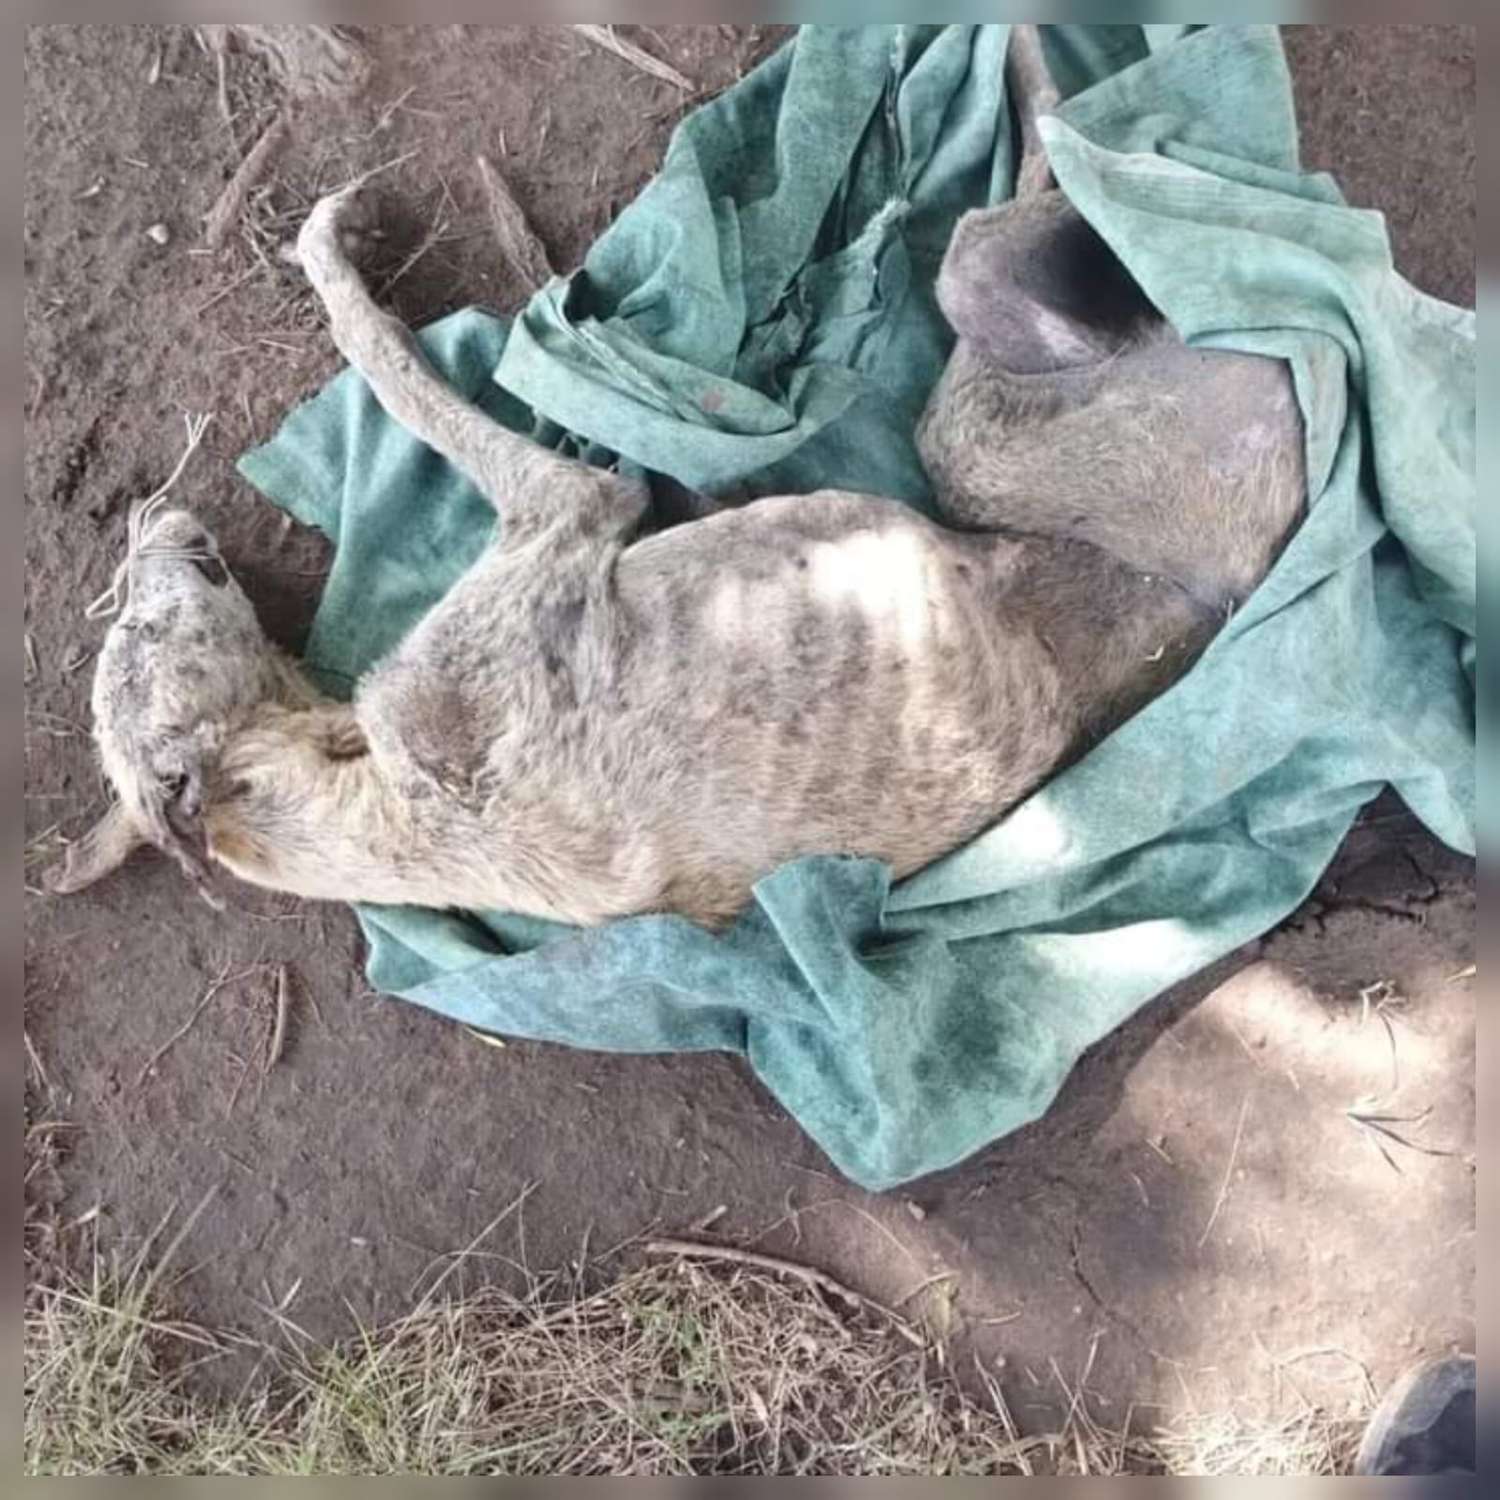 Una perra fue enterrada viva y sus dueños enfrentan penas de entre 15 días a un año de prisión